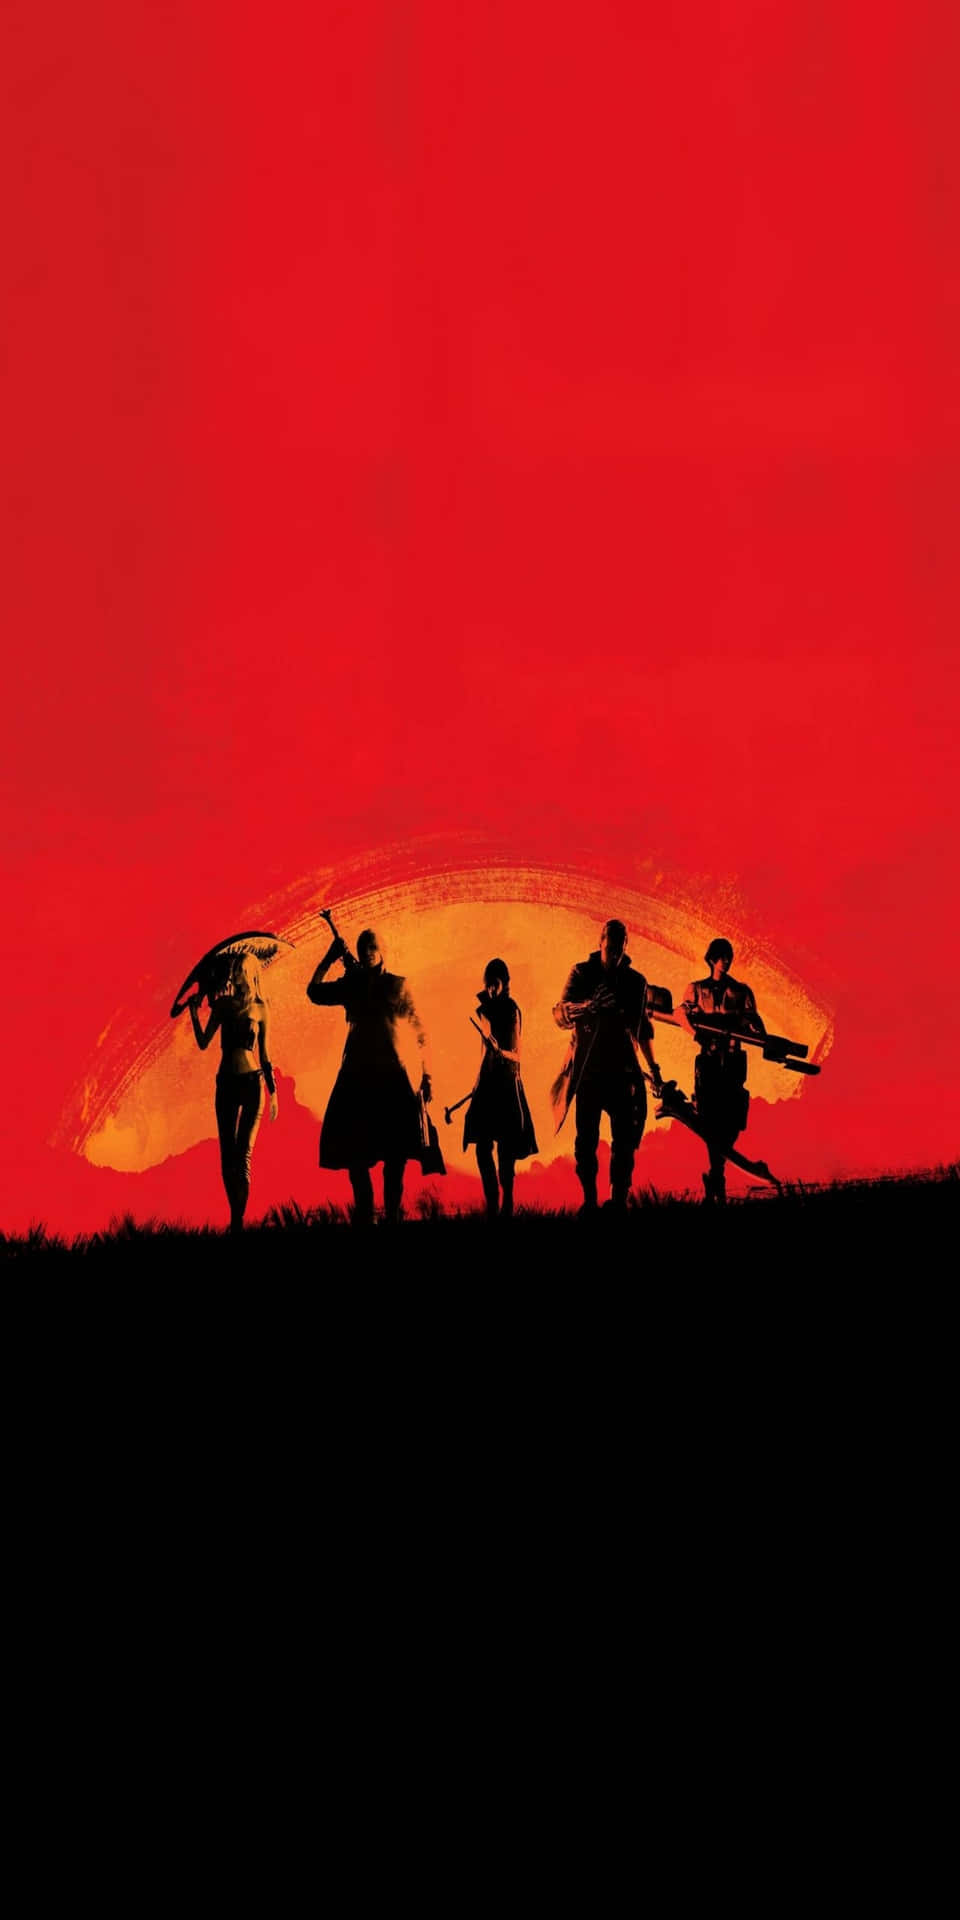 Pixel3 Bakgrundsbild Med Red Dead Redemption 2-posterutmålning I Rött.